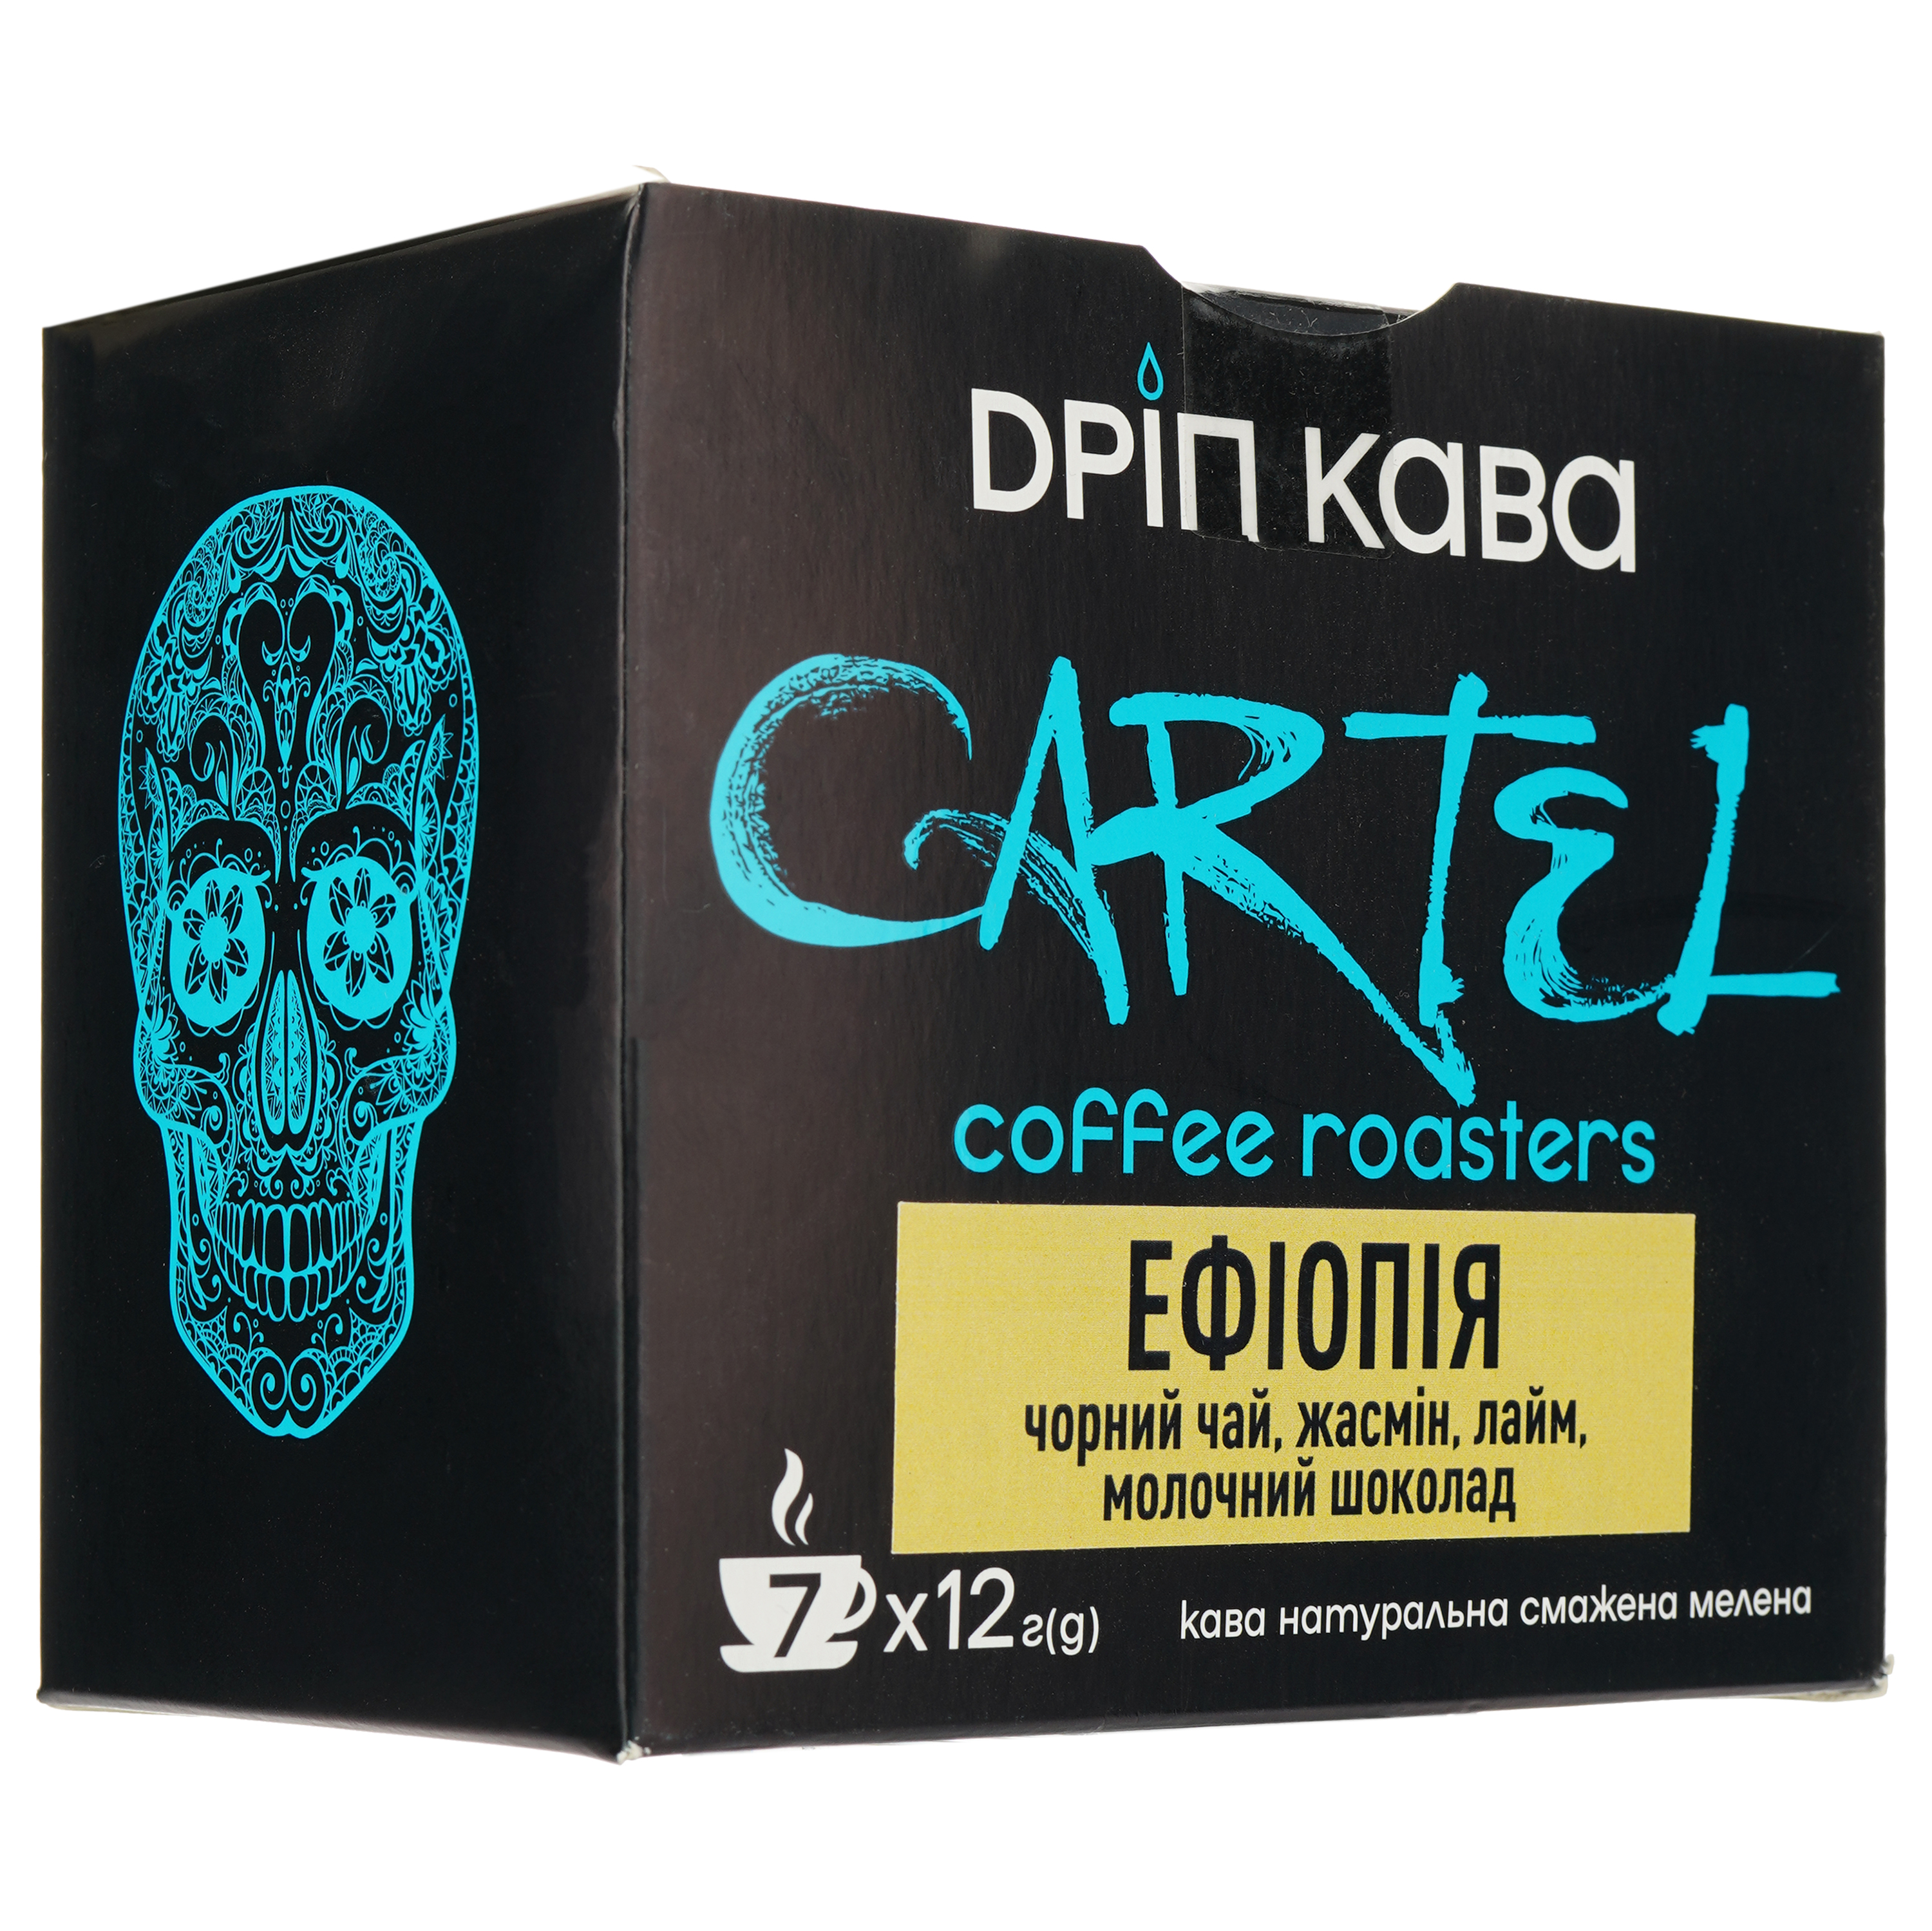 Дрип-кофе Cartel Эфиопия 84 г (7 шт. по 12 г) - фото 1